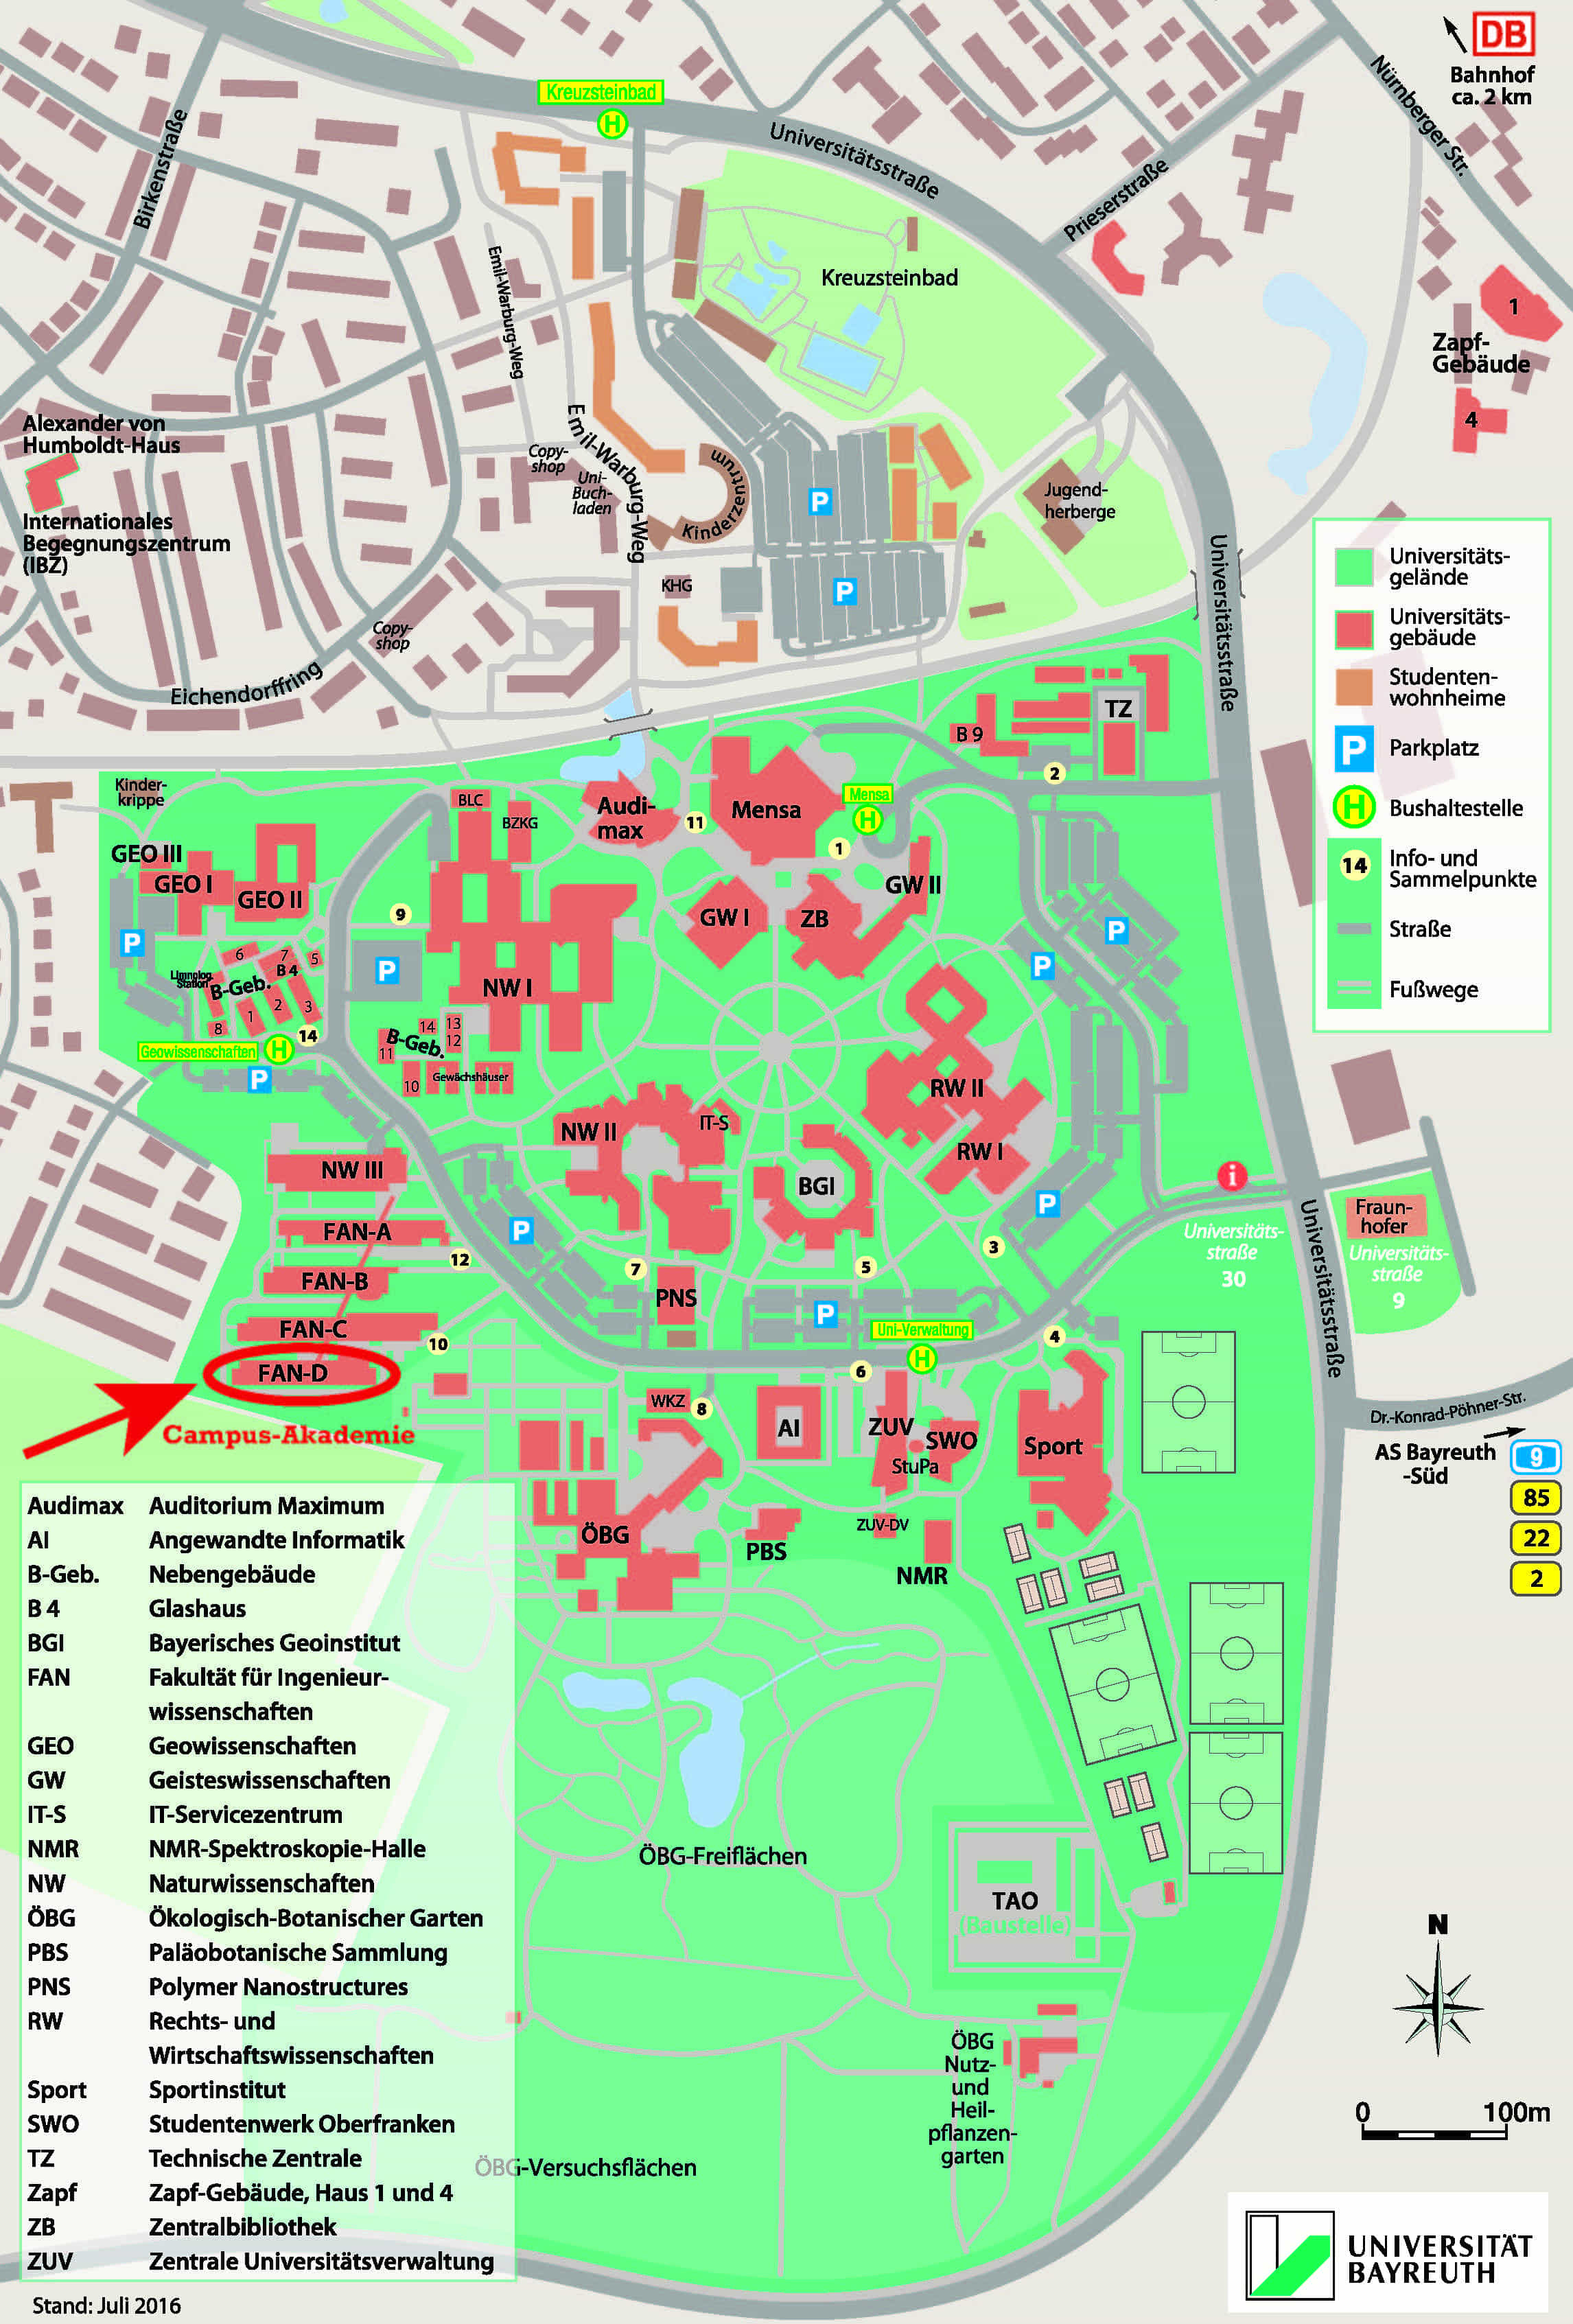 Campusplan der Universität Bayreuth mit Campus-Akademie